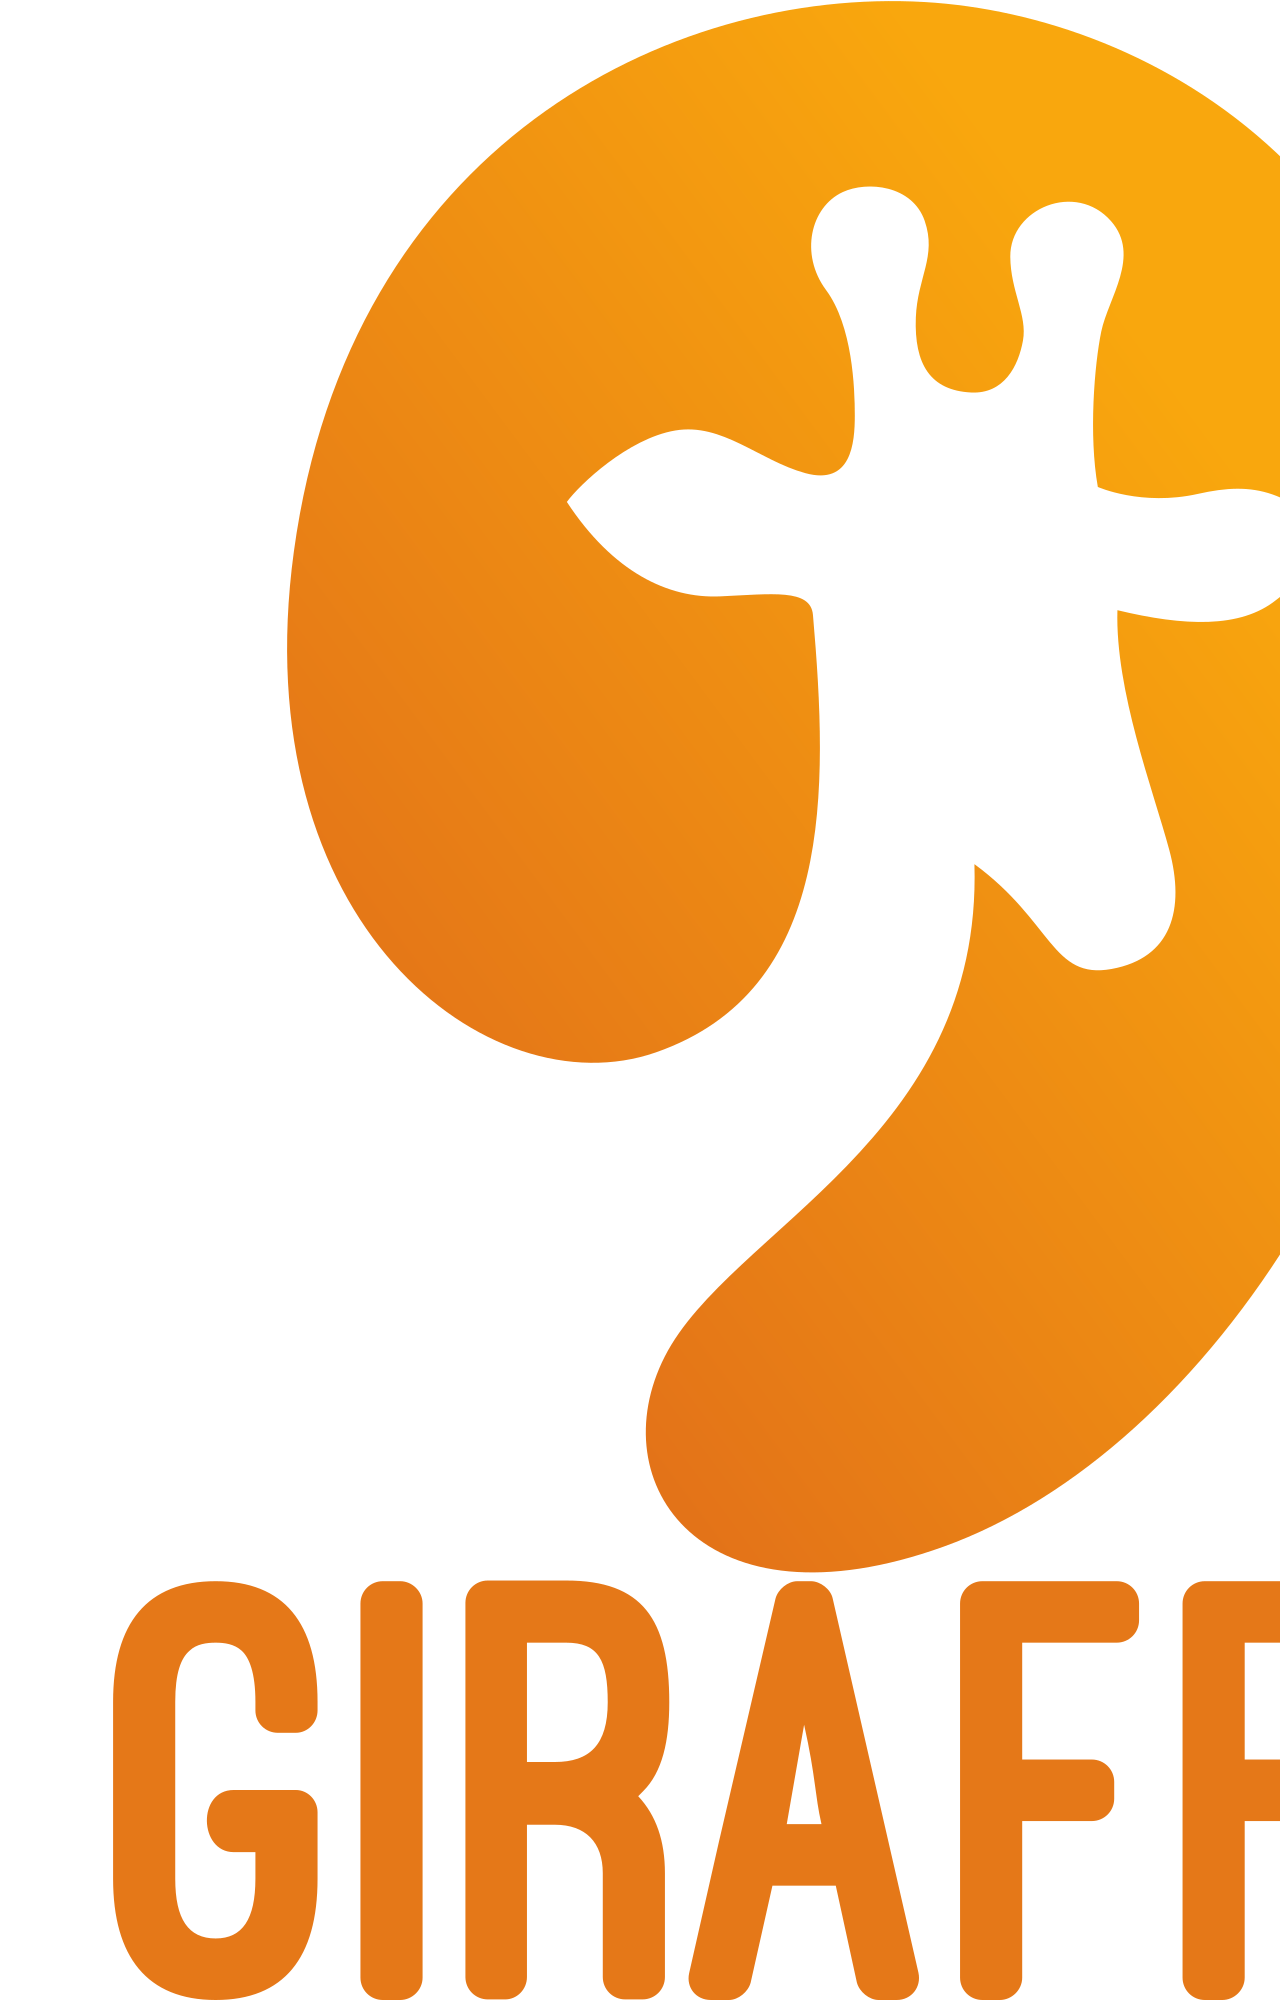 Giraffe 's logo